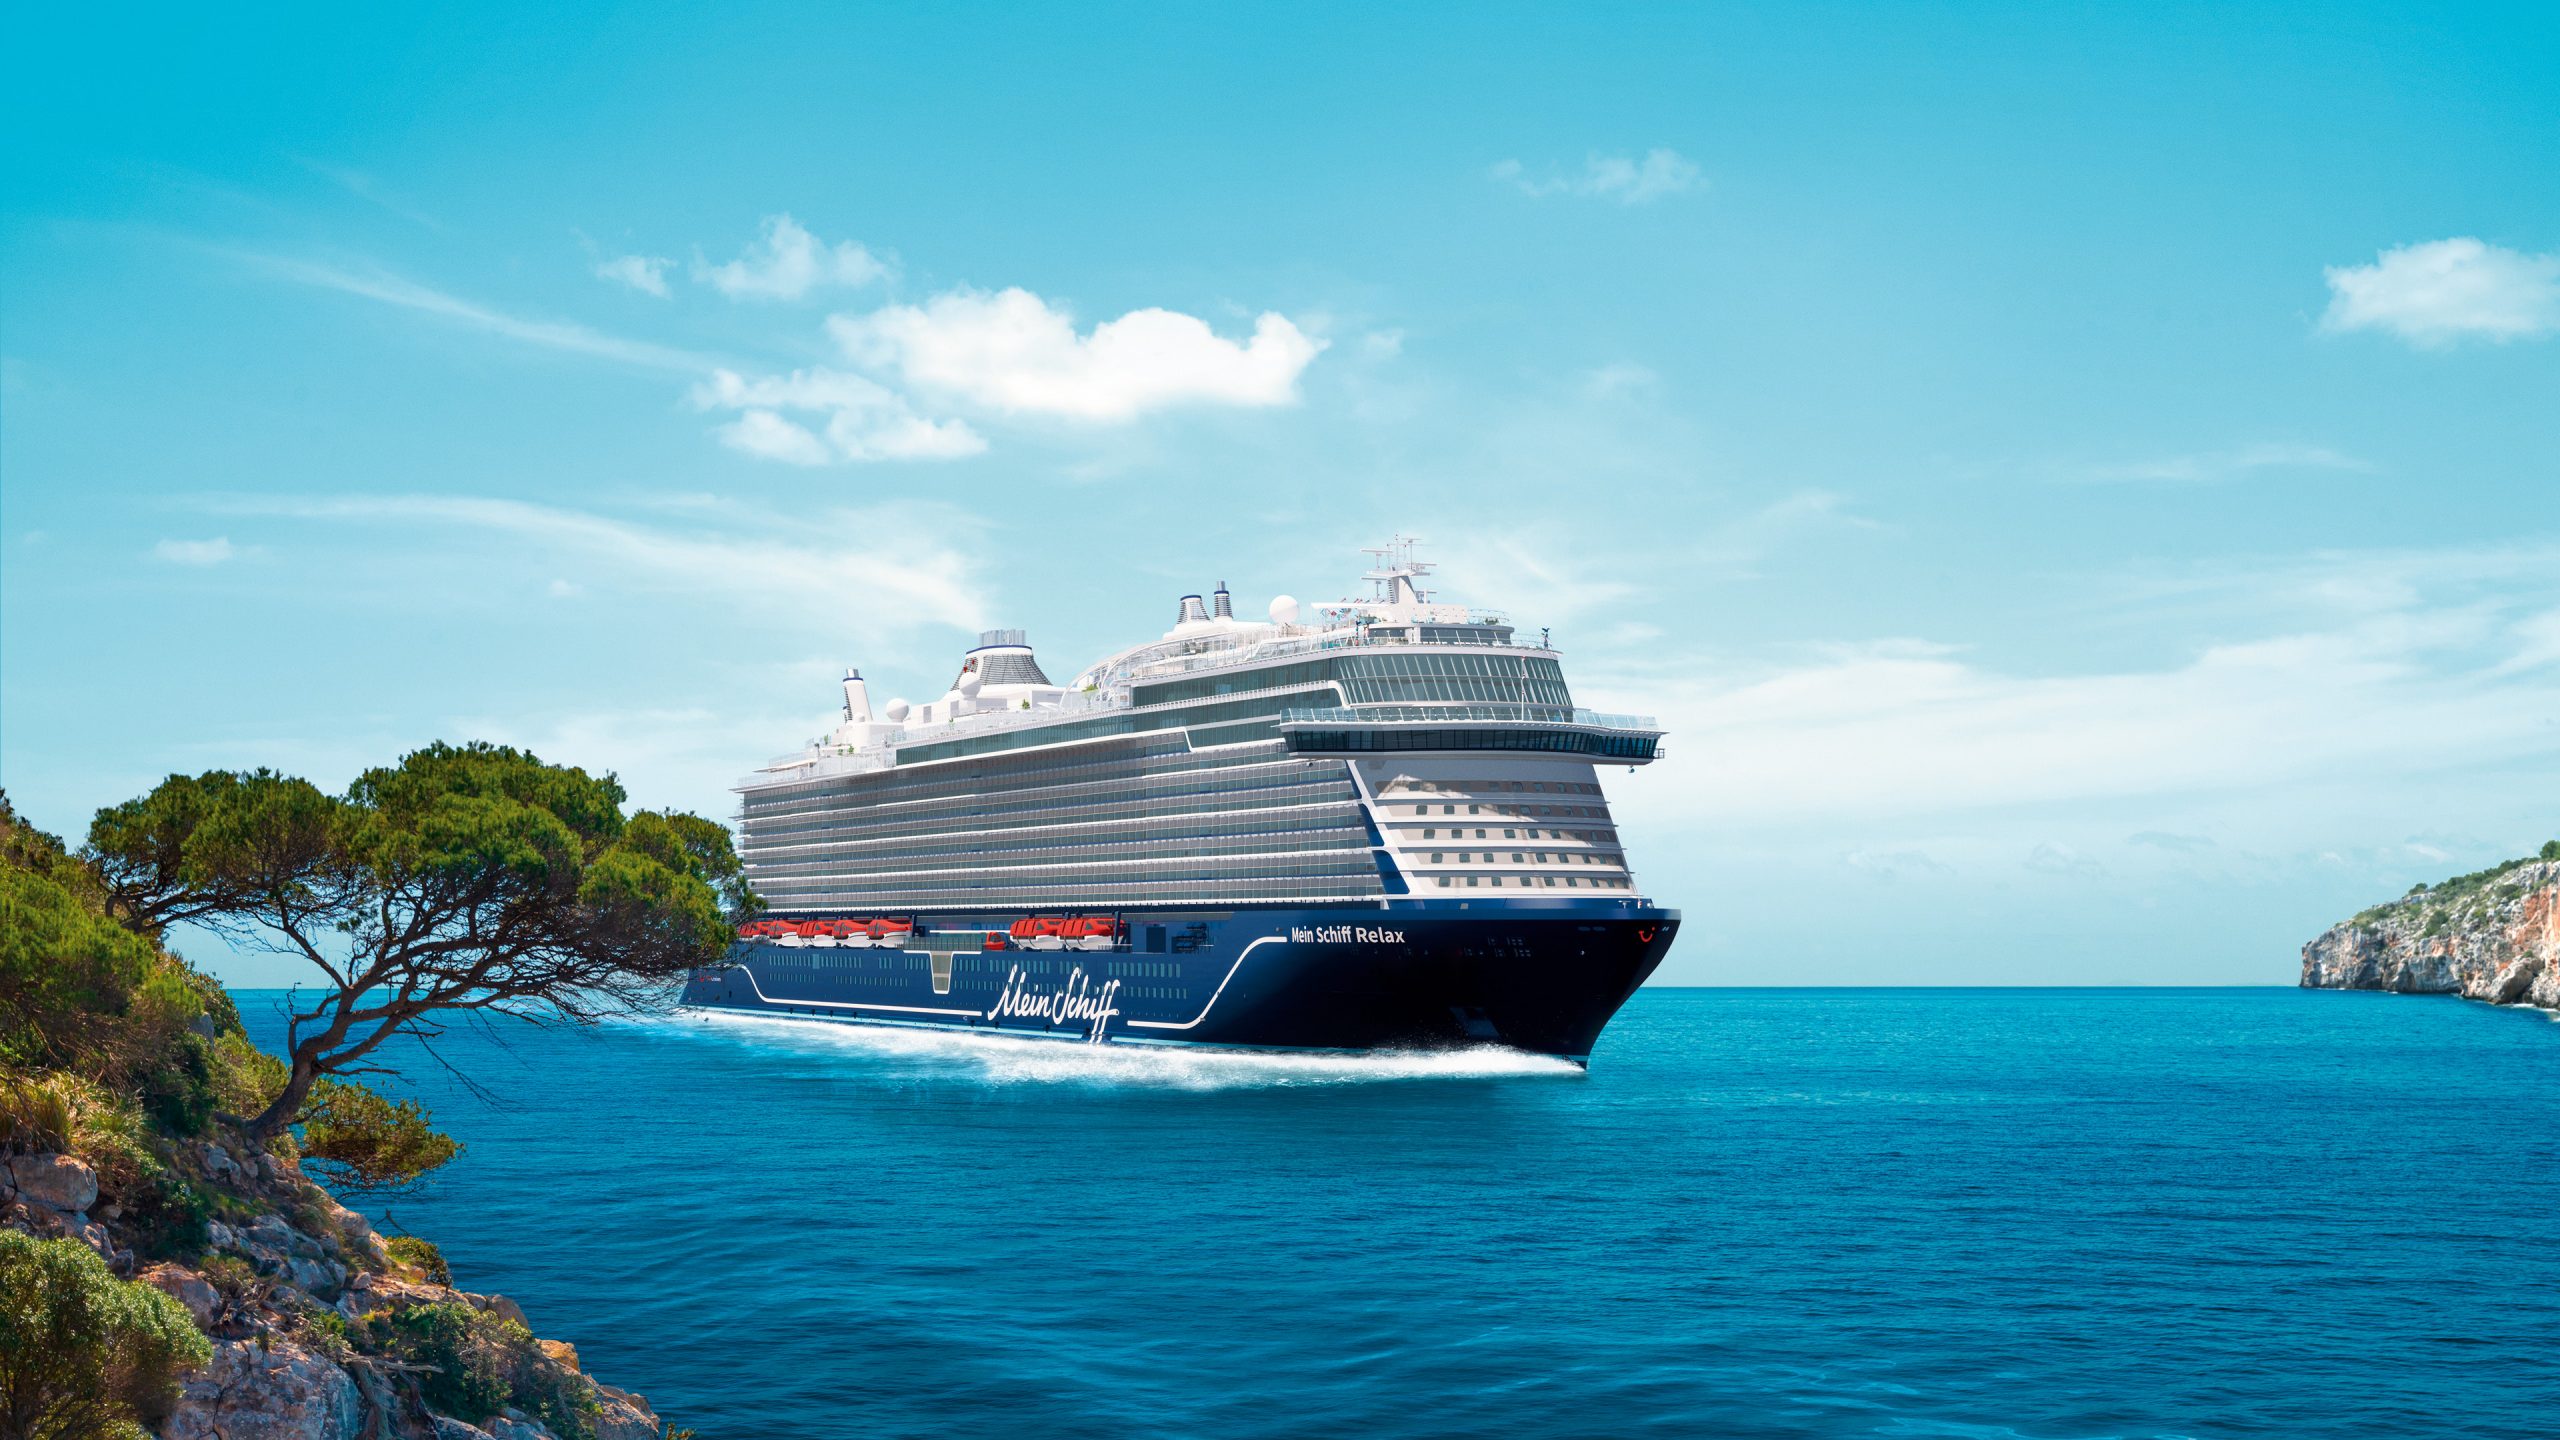 TUI Cruises verkündet Namen des achten Schiffes: Mein Schiff Relax